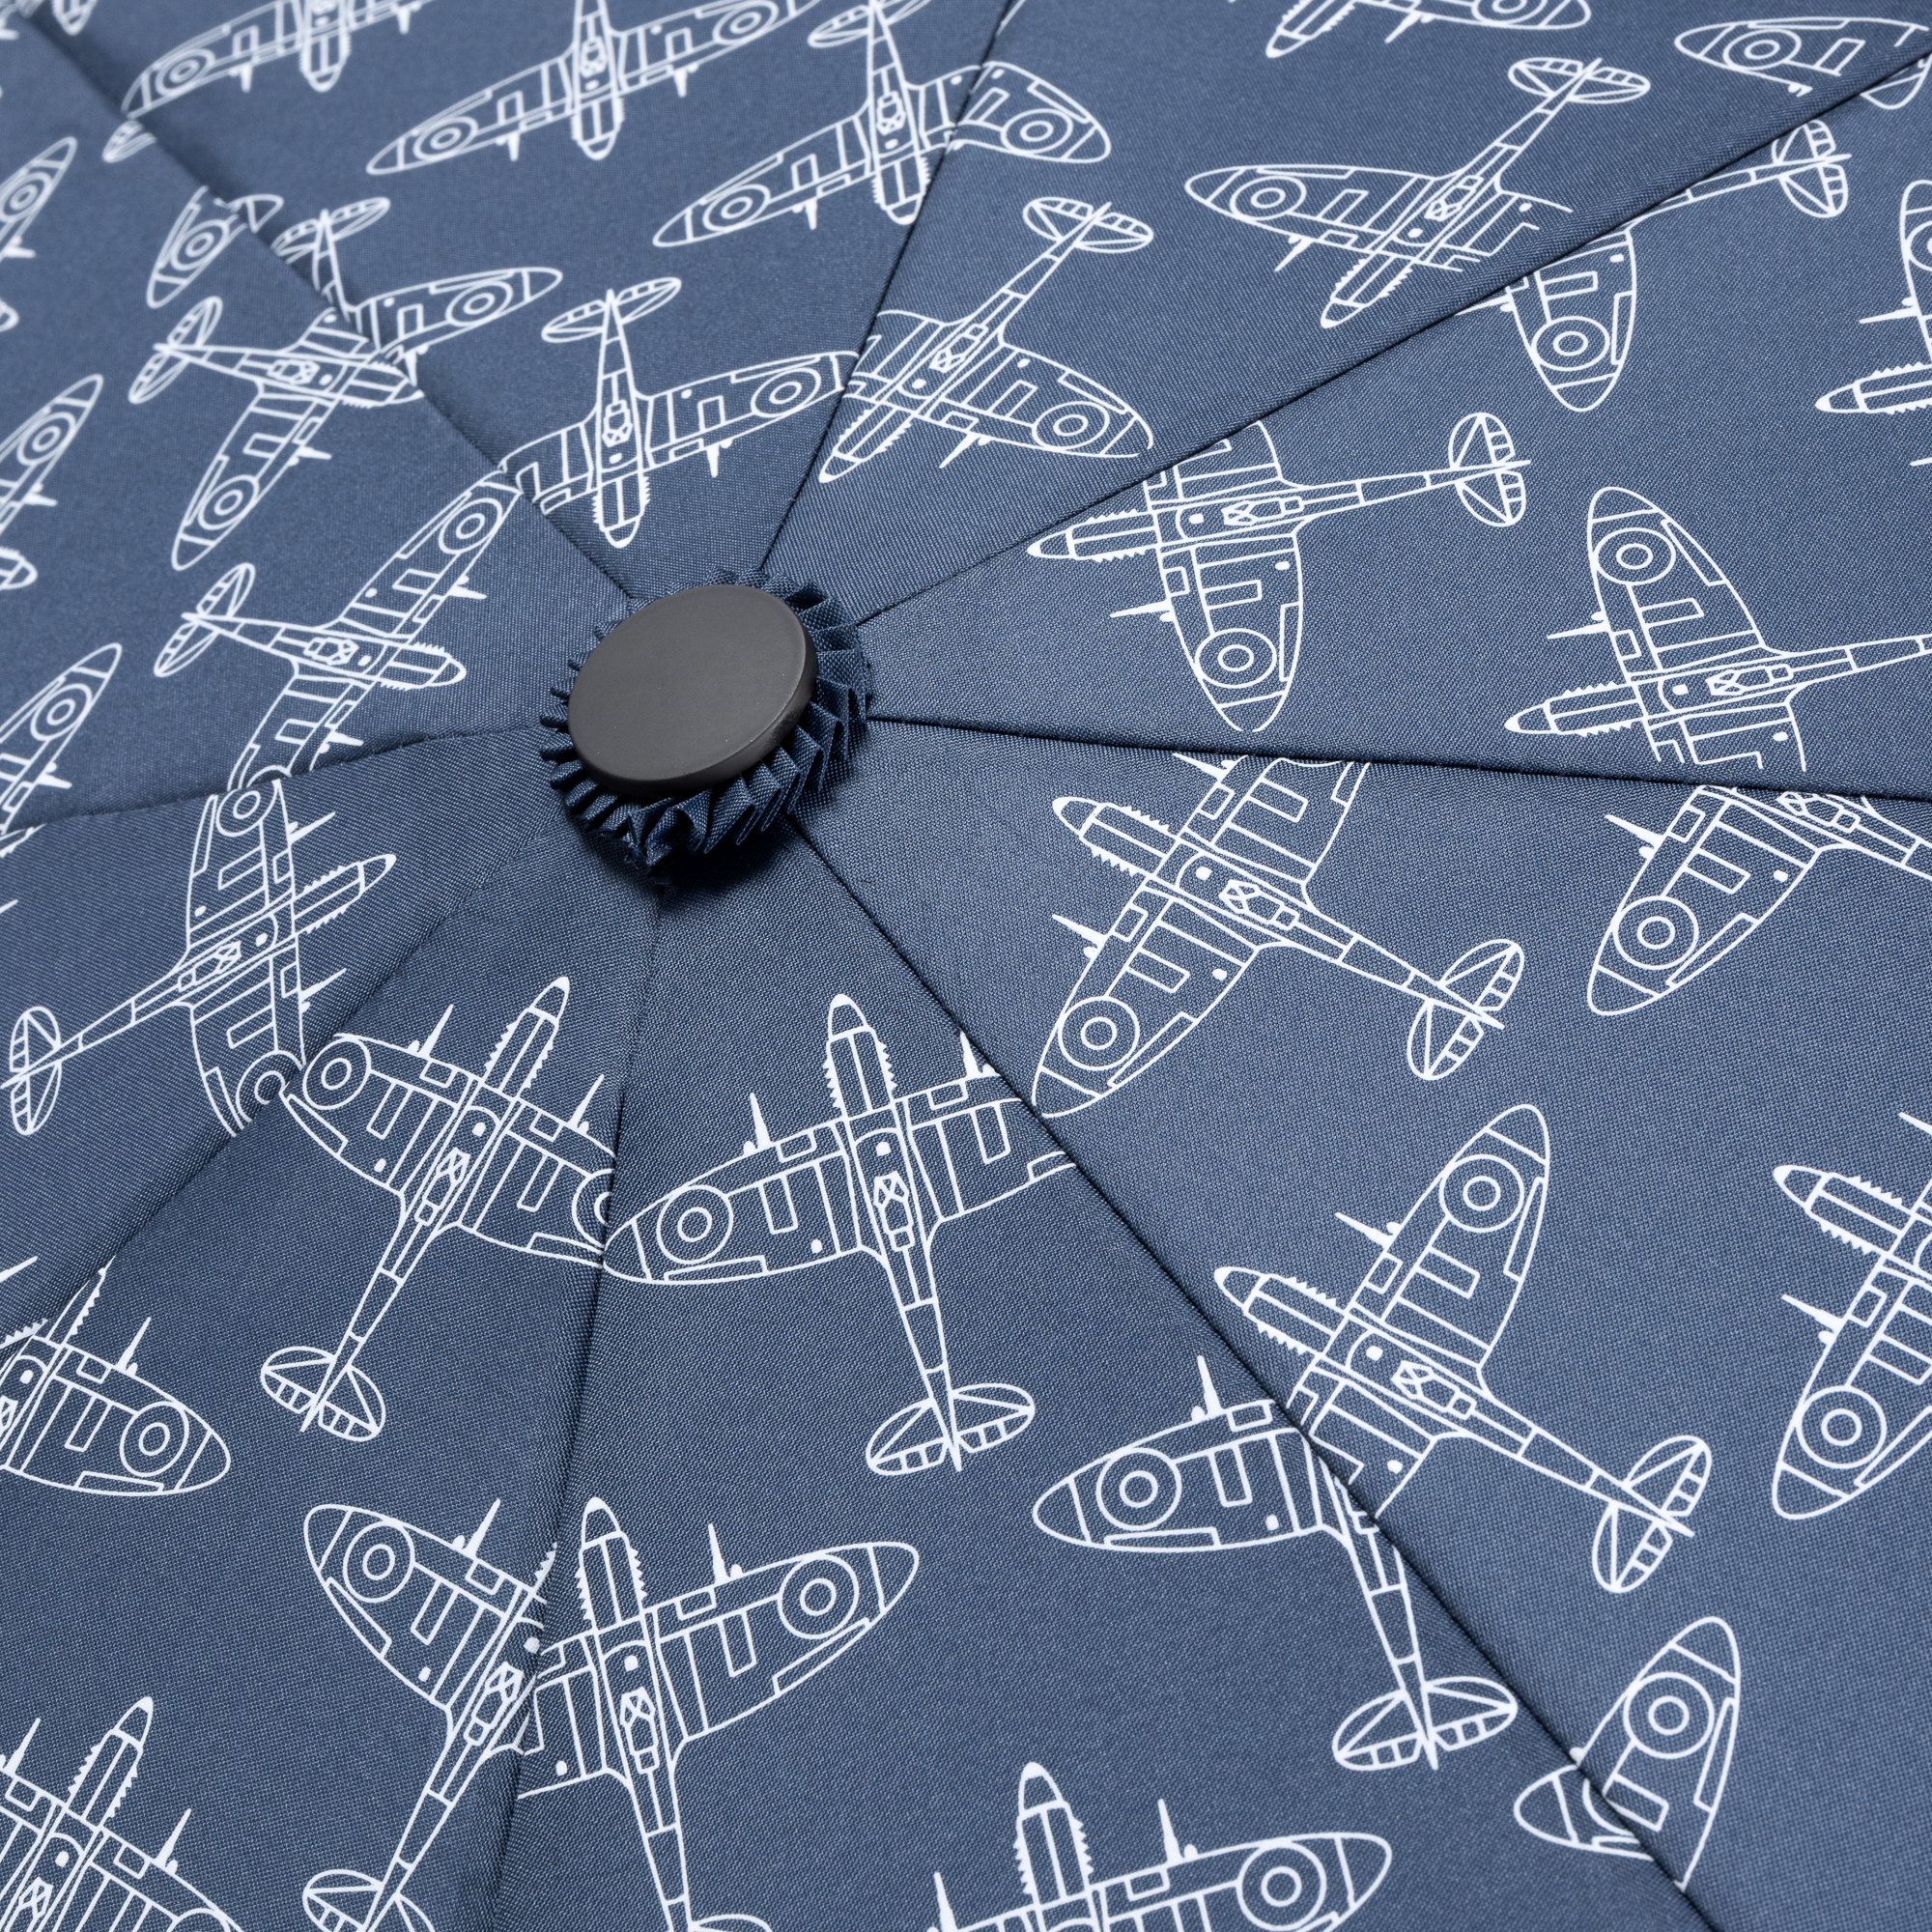 Spitfire Umbrella